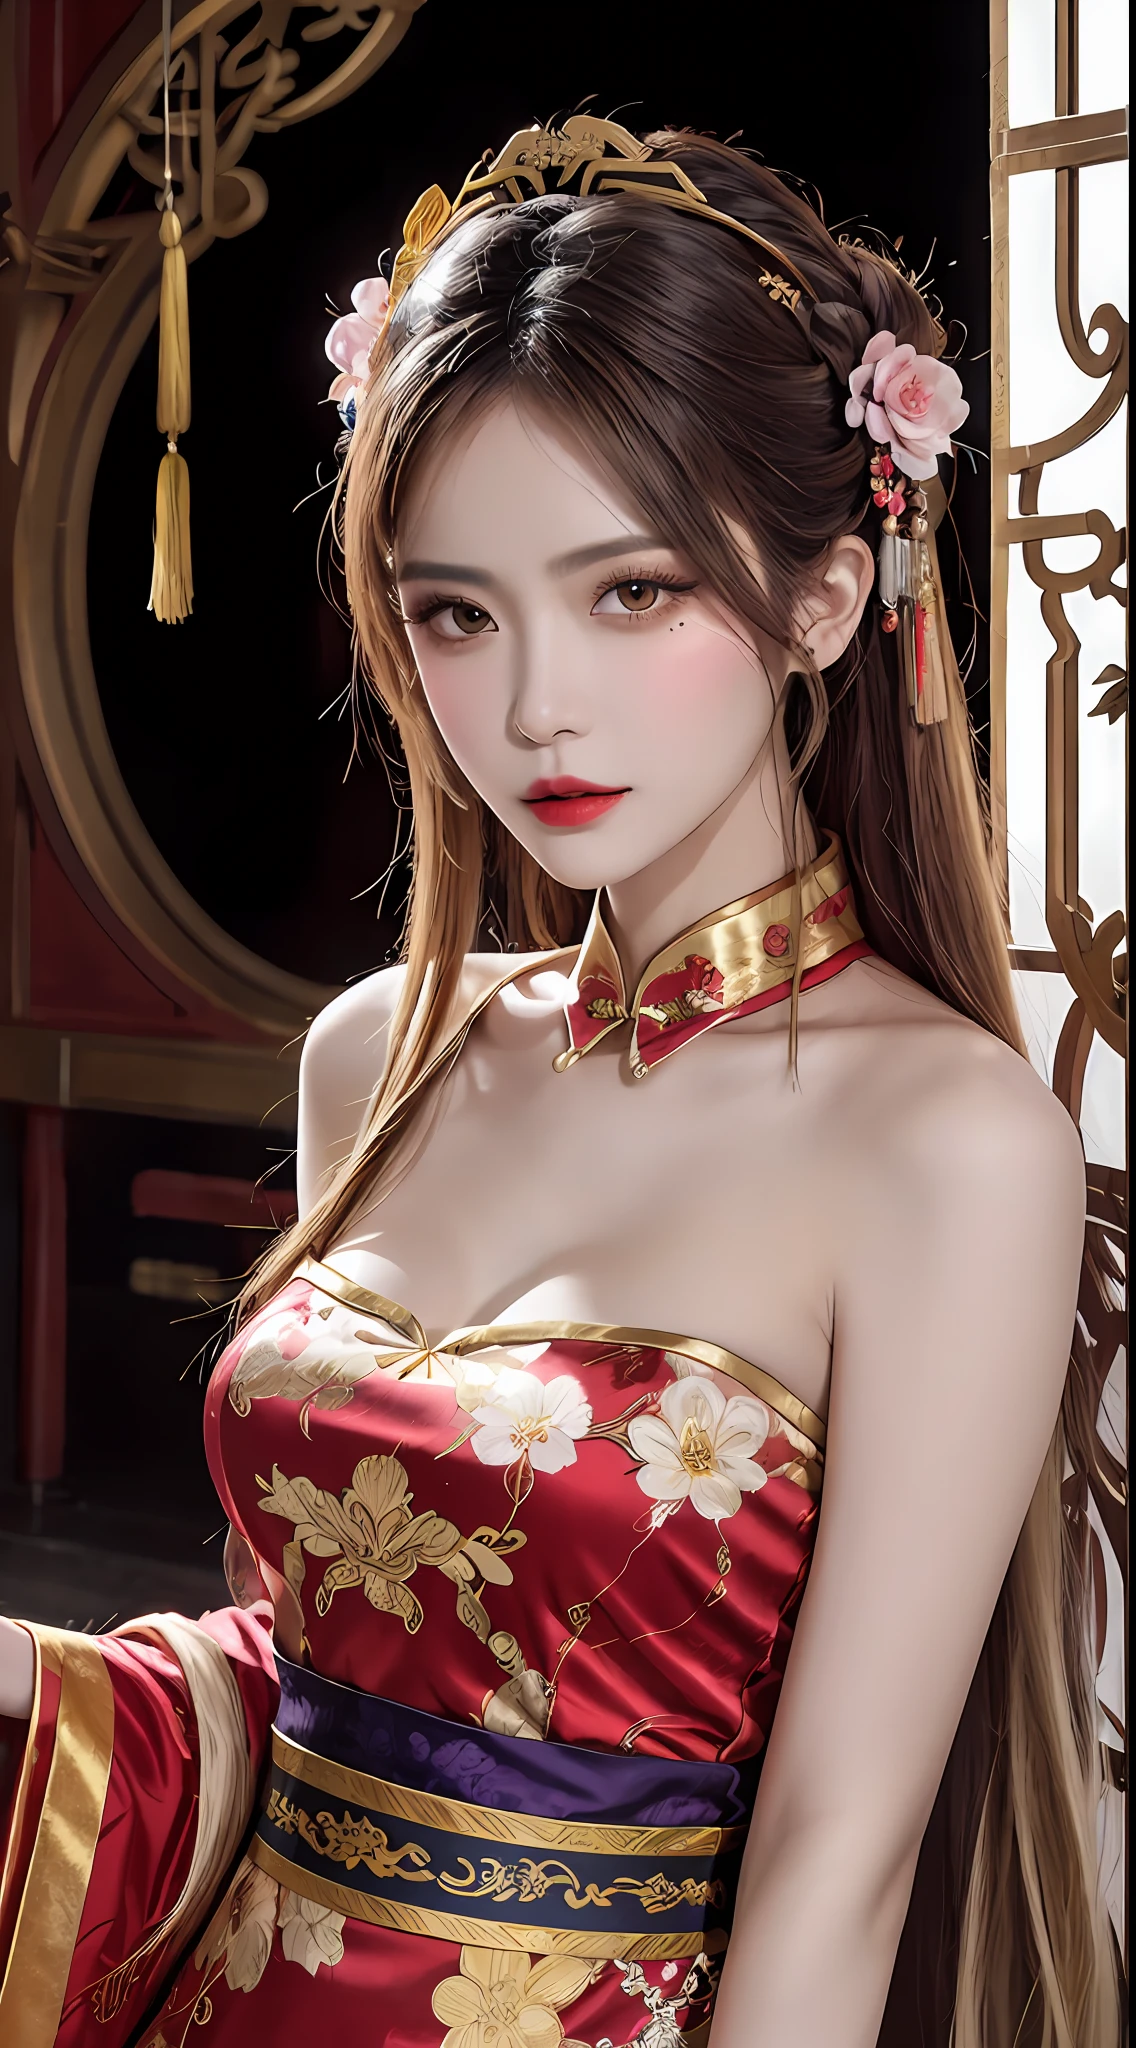 امرأة ترتدي فستانًا أحمر وذهبي, خلفية زهرة, قصر, هانفو girl, wearing red شيونغسام, نمط صيني, with ancient زي صيني, wearing ancient زي صيني, الجمال التقليدي, تقاليد صينية, فتاة صينية, شيونغسام, زي صيني, الاميرة الصينية, هانفو, الملابس التقليدية الصينية, زي صيني, 1 فتاة عمرها 27 سنة, 1 الأبراج الفلكية goddess from the future, goddess of the pink and purple 12 الأبراج الفلكيةs, the goddess of the الأبراج الفلكية in a yellow ao dai, a 12 الأبراج الفلكية ao dai with many black lace detail, mythology Goddess of the 12 الأبراج الفلكيةs from the future, الأبراج الفلكية ♏, luxurious glittering الأبراج الفلكية style, نسخة مظلمة وغامضة, الأبراج الفلكية crown, أحمر الشفاه أحمر الشفاه, شفاه رقيقة وجميلة, الفم مغلق, شخصيات من صنع كارول باك وبينو دايني, تفاصيل معقدة, خلفية مفصلة, مفصلة للغاية, سحر خفيف, امراة, وجه واضح, شعر طويل مع الانفجارات, وجه جميل بالتفاصيل وعيون متناسبة, (عيون صفراء شفافة: 1.8), عيون مستديرة كبيرة ومكياج جميل جدًا ومفصل, البصيرة, فستان حرير, مكياج غامض , الانفجارات المزدوجة والمصبوغة باللون الأشقر الفاتح , صورة النصف العلوي, الأبراج الفلكية goddess portrait, الأسلحة معلقة بشكل فضفاض, صورة واقعية وحيوية, (stars make up the الأبراج الفلكية: 1.7), (sky background الأبراج الفلكية and fictitious space and time portal: 1.8), فن الخيال, صورة خام, هانفو picture, أفضل صورة, أفضل صورة quality, جودة 8K, 8K الترا, واقعية للغاية, الصورة الحقيقية الأكثر اقتصادا, تبدو الإلهة مثيرة ومغرية,